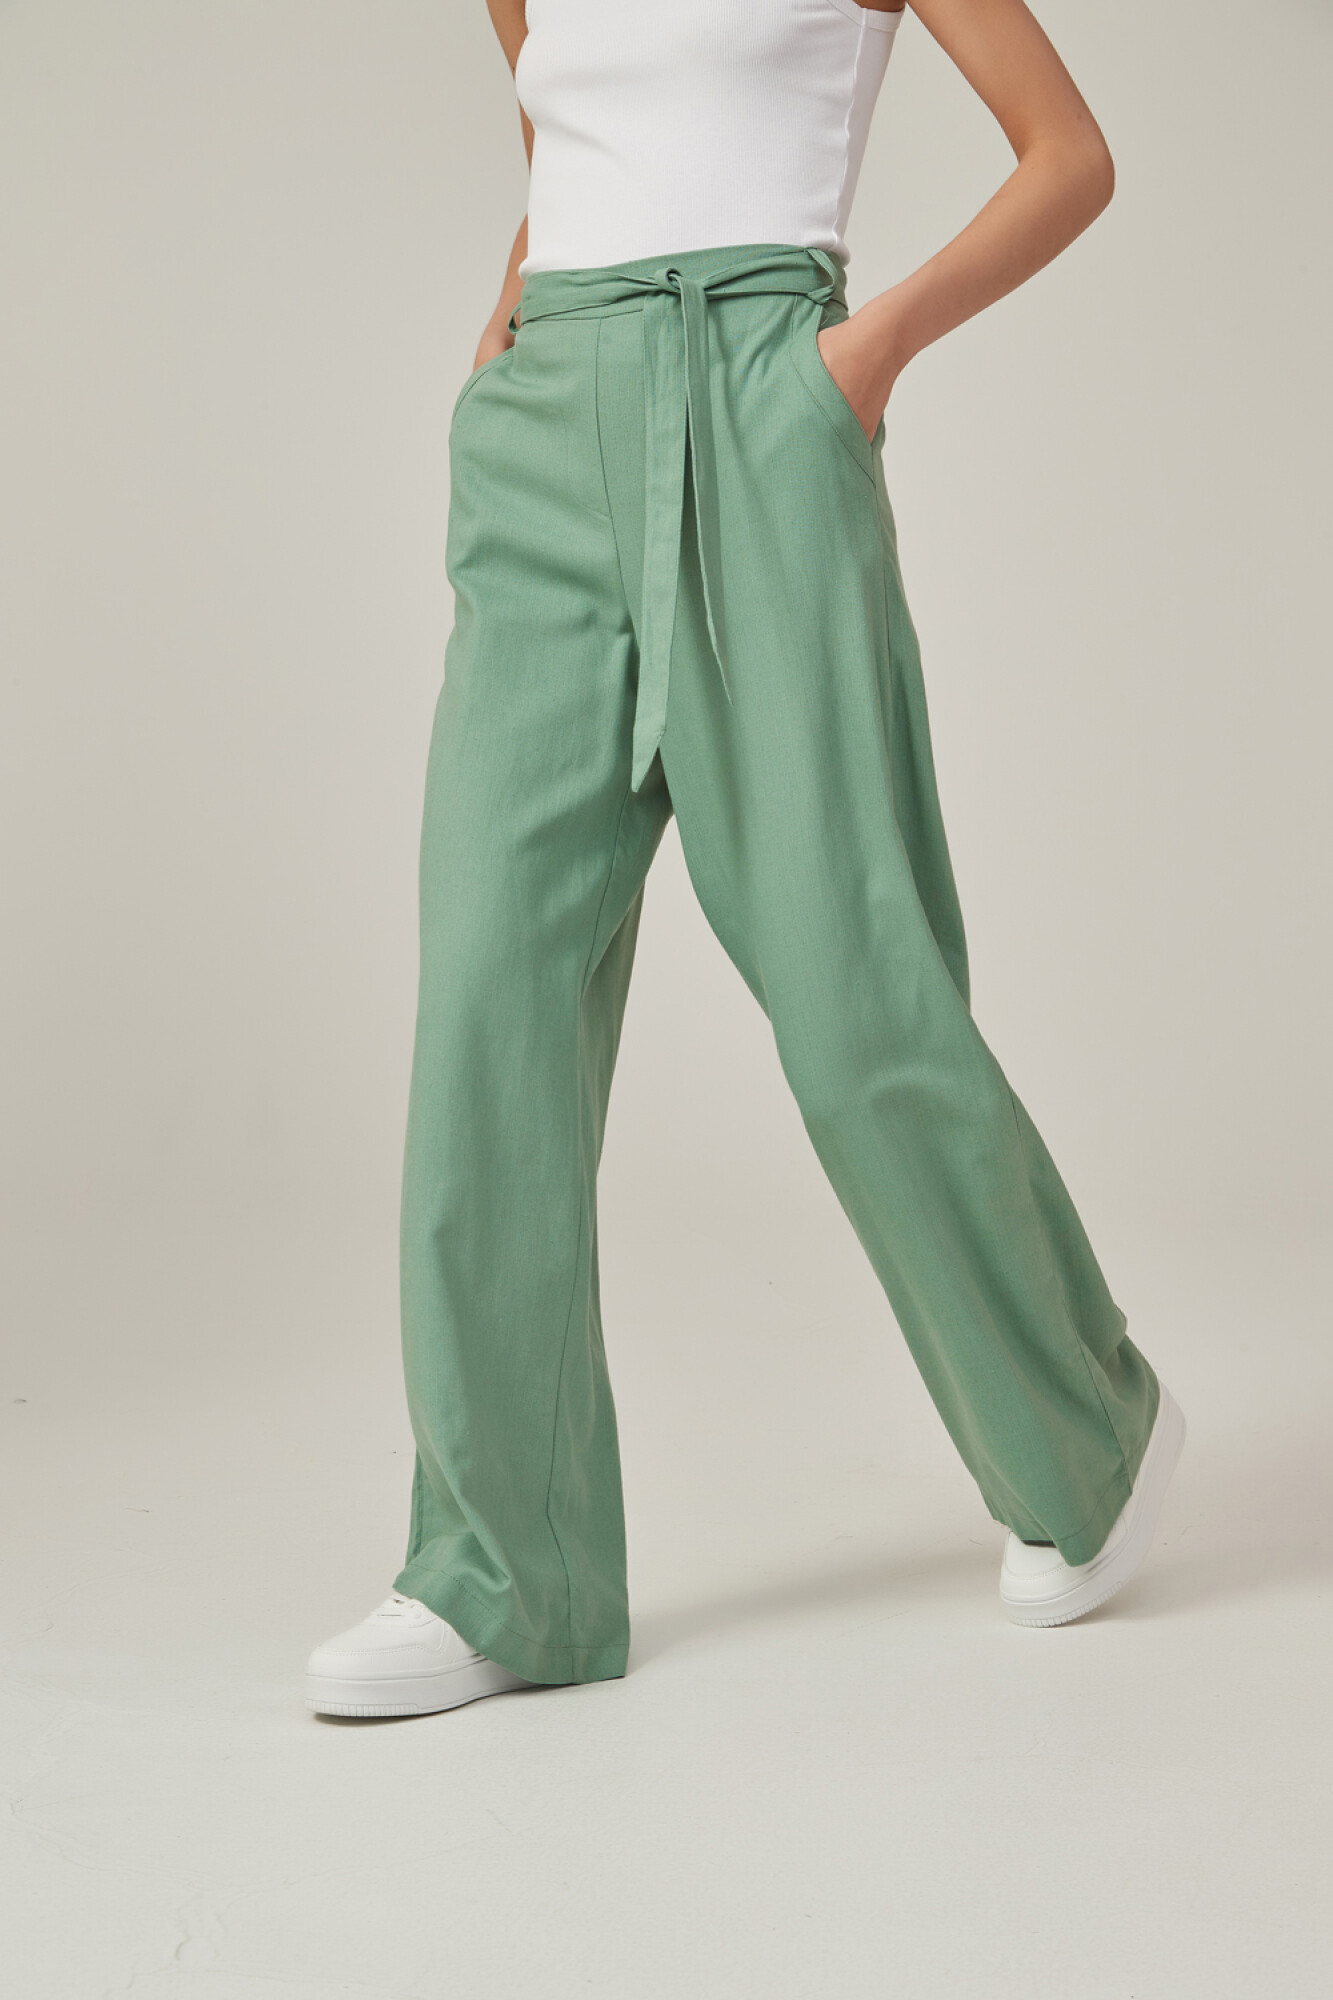 Pantalón verde